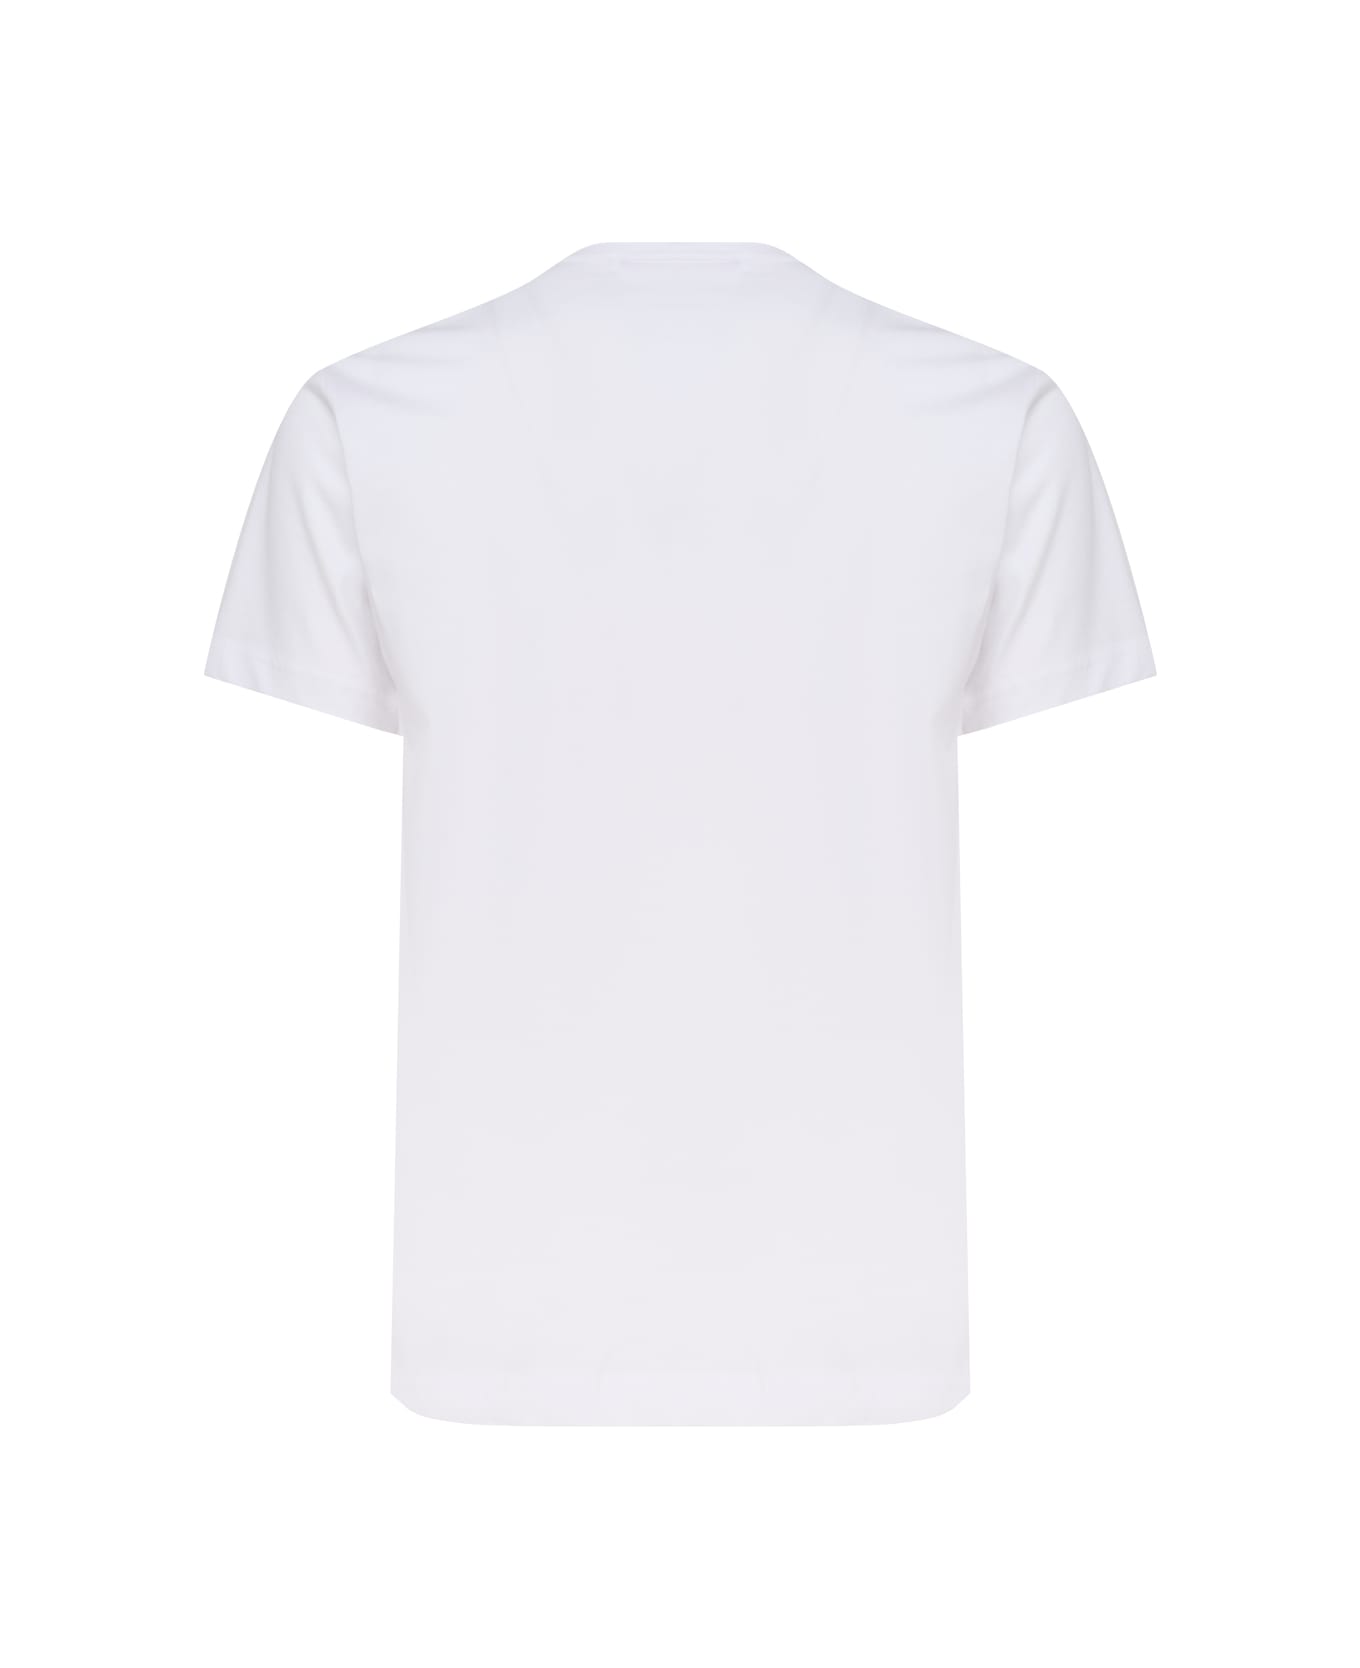 Comme des Garçons Cotton T-shirt - White シャツ